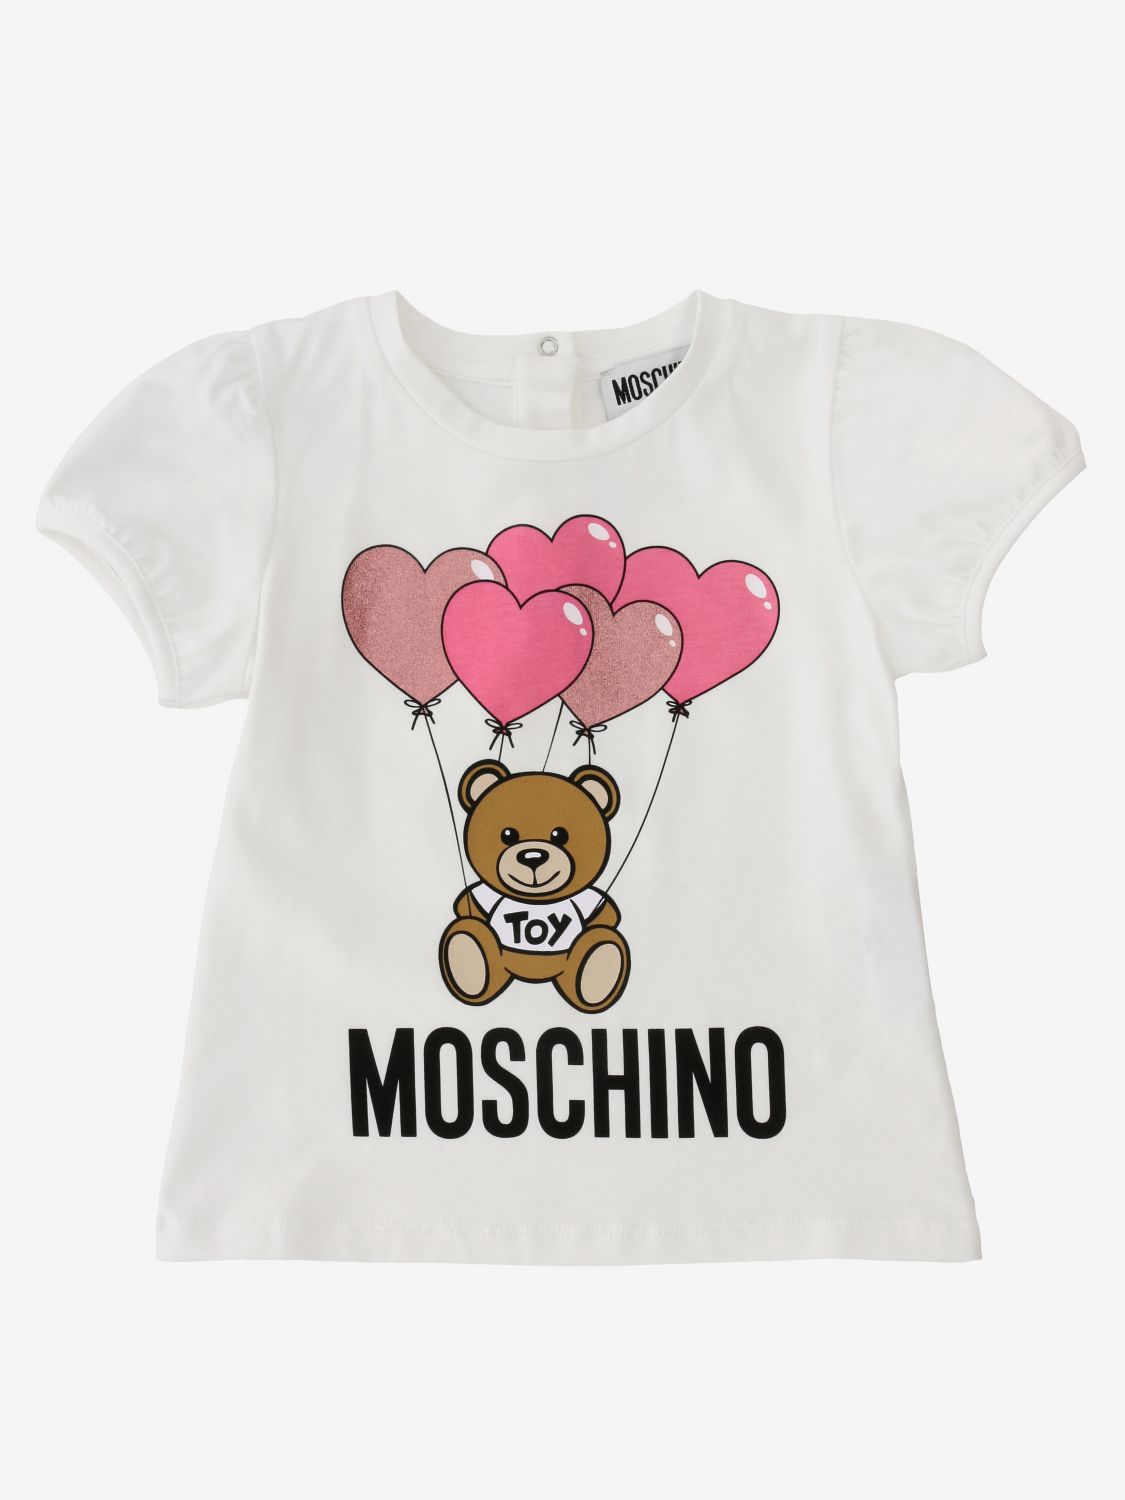 moschino t shirt baby